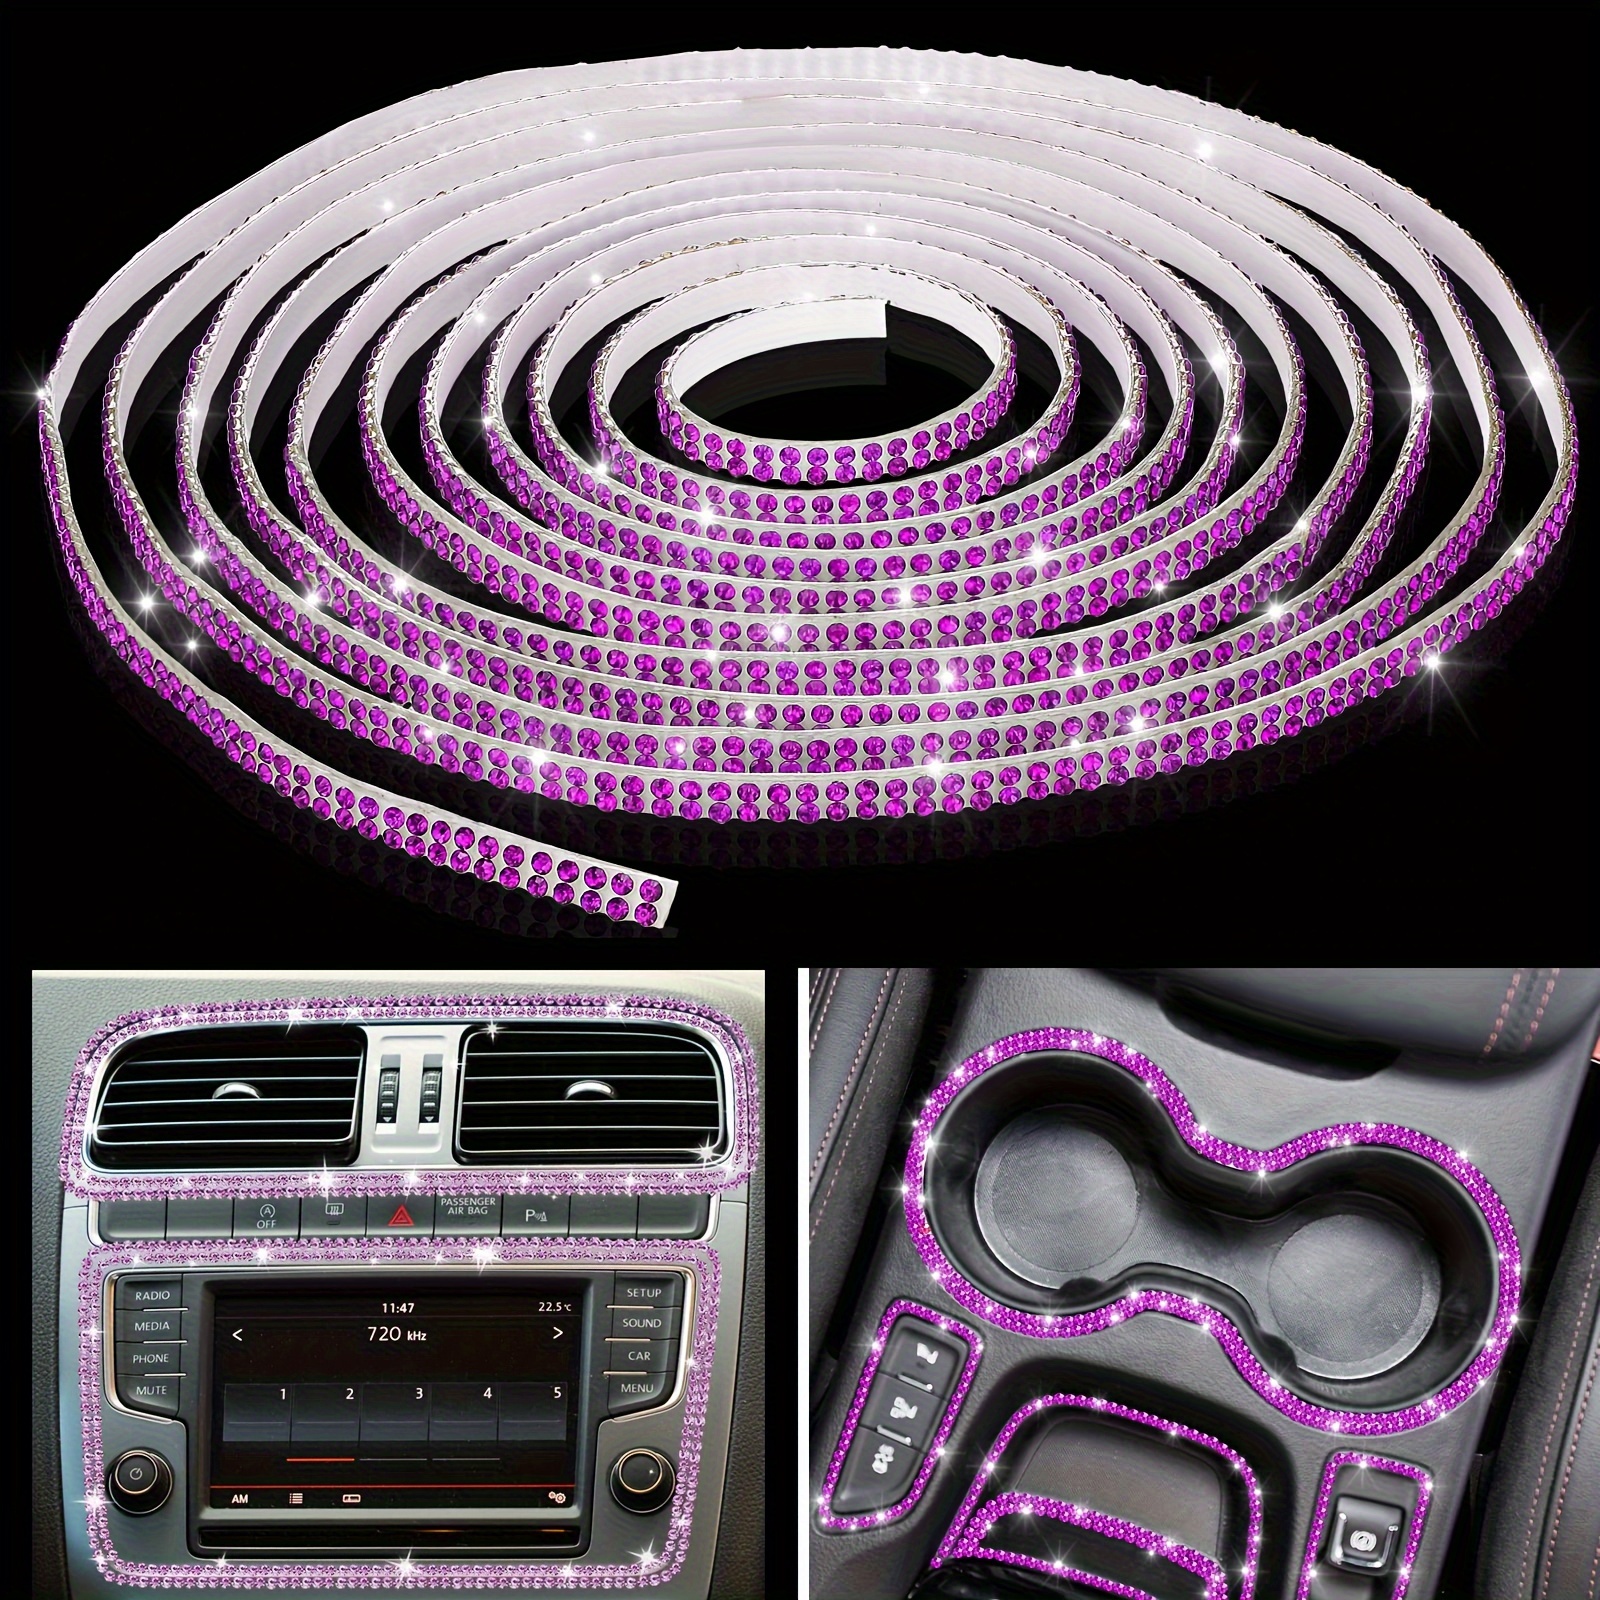 5M Purple Car Auto Grille Interior Exterior Decoration Moulding